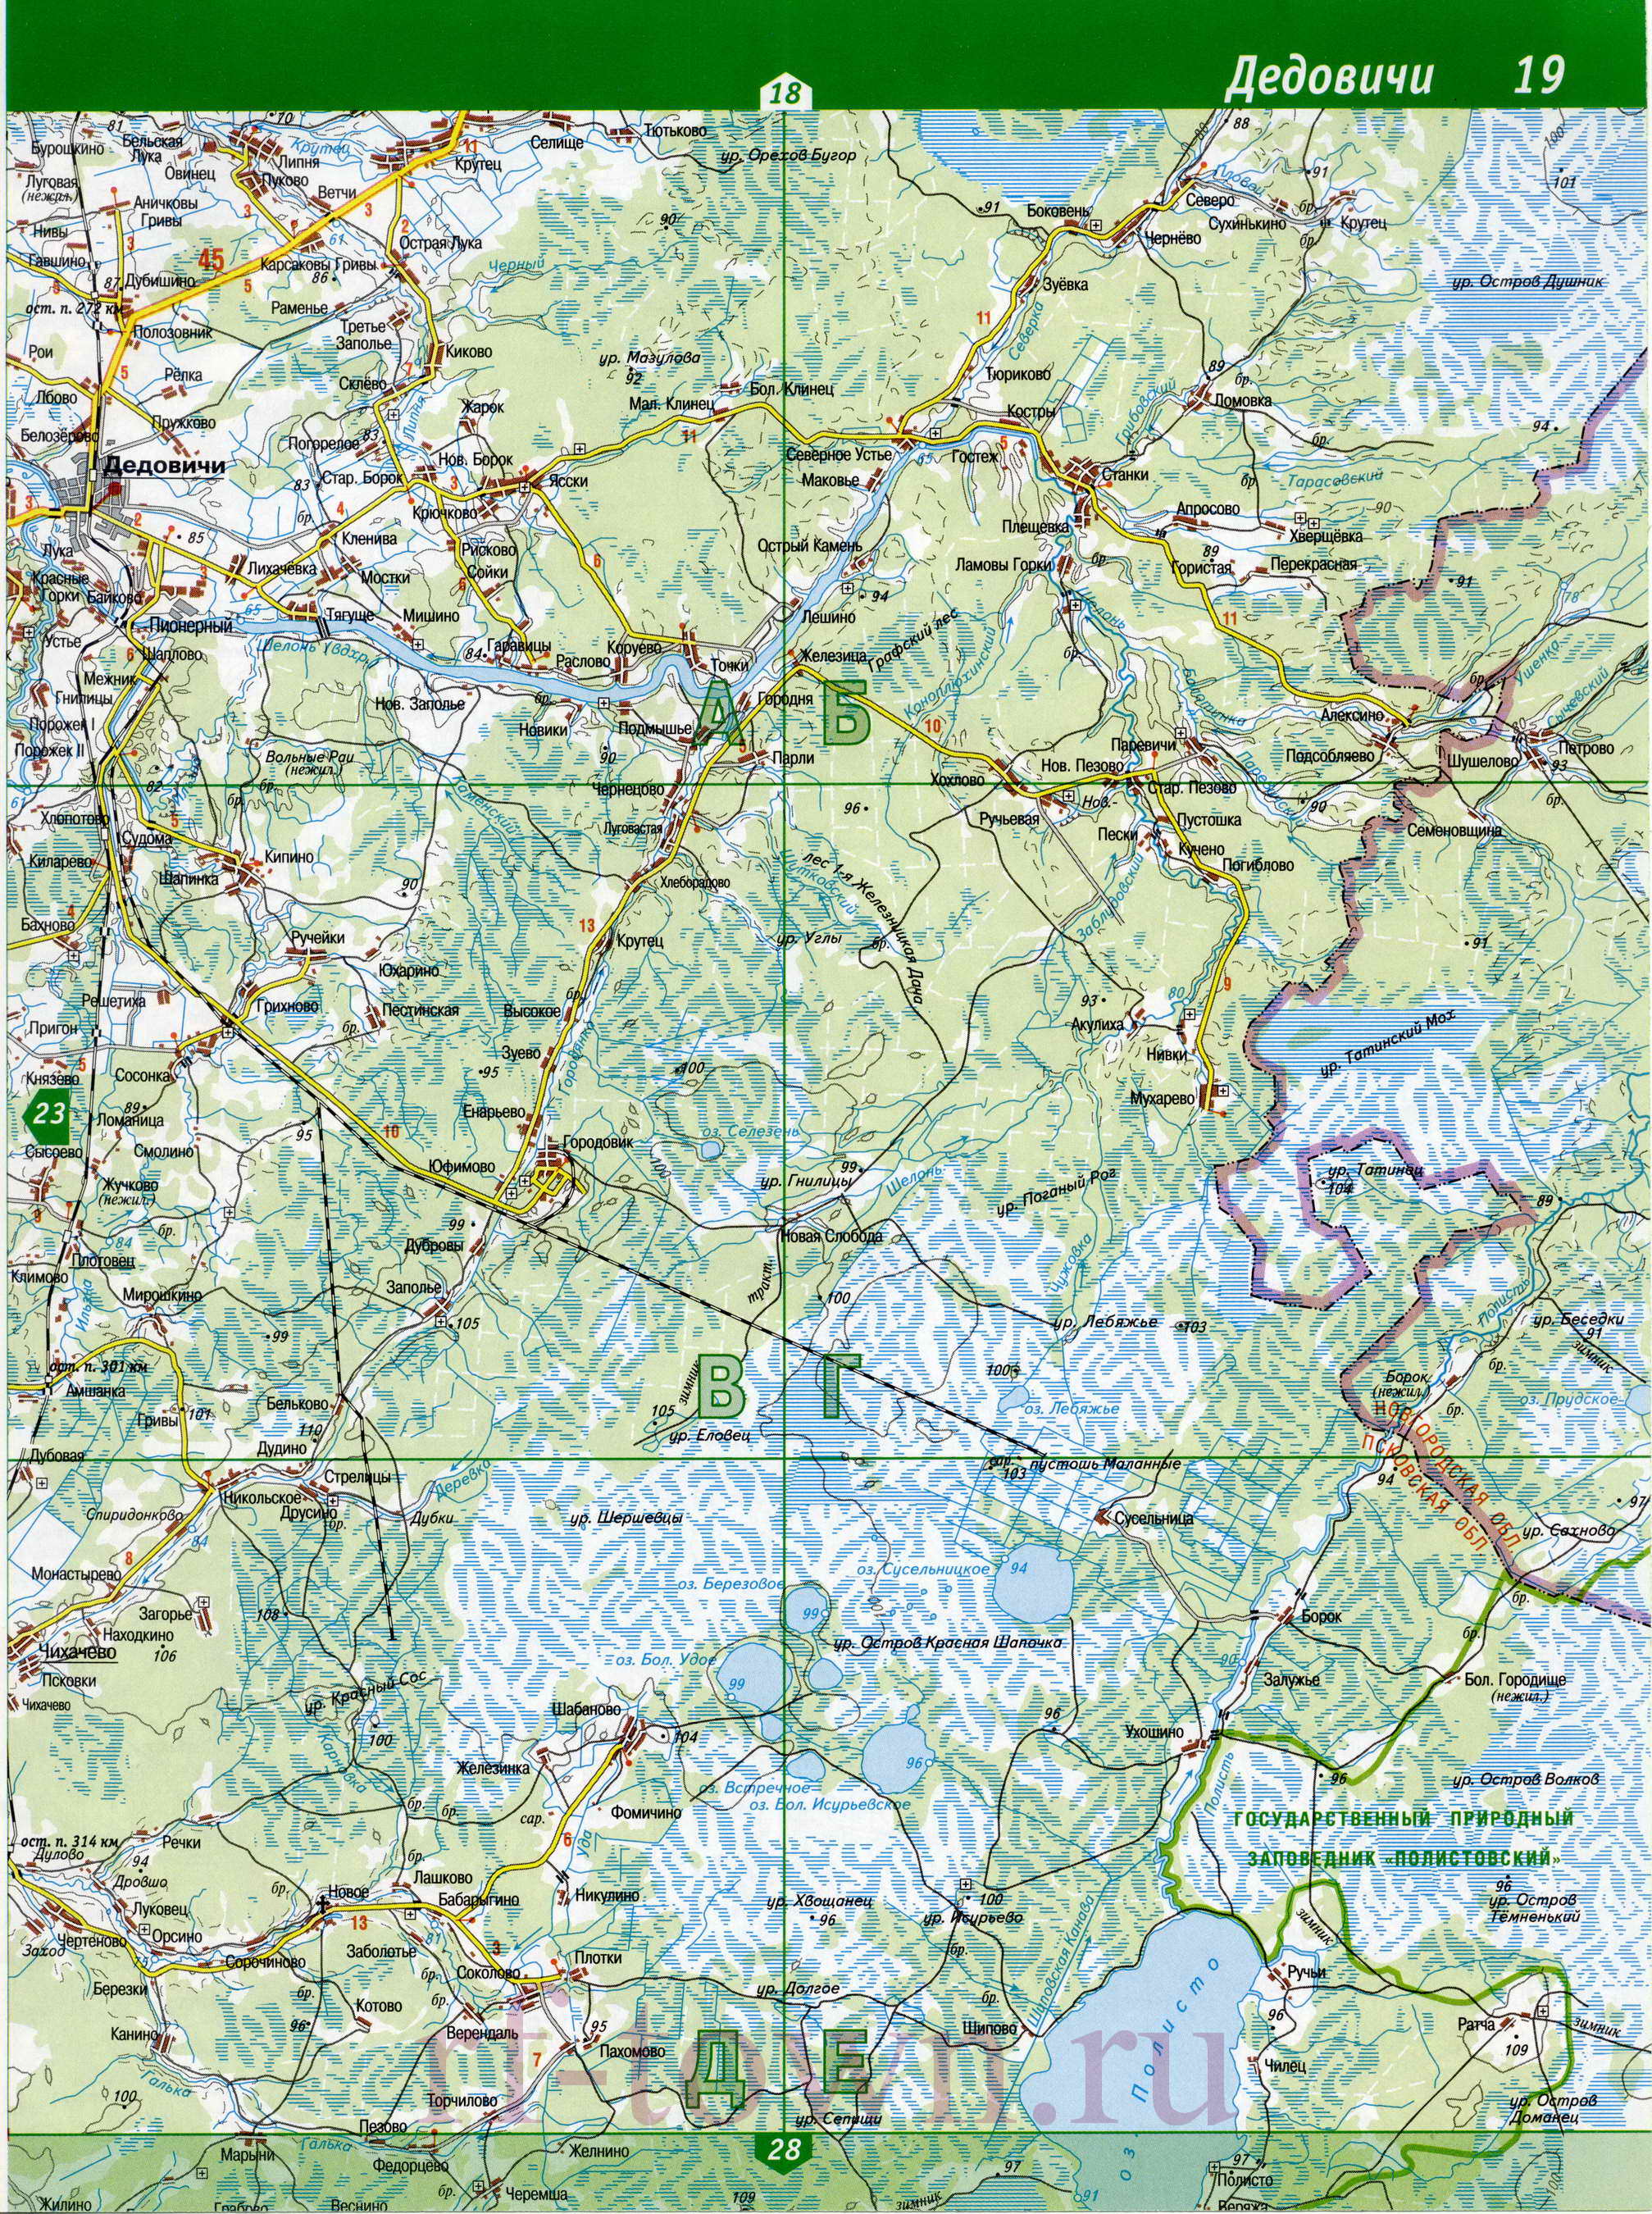 Карта Дедовичского района. Карта дорог Дедовичский район Псковской области, B0 - 